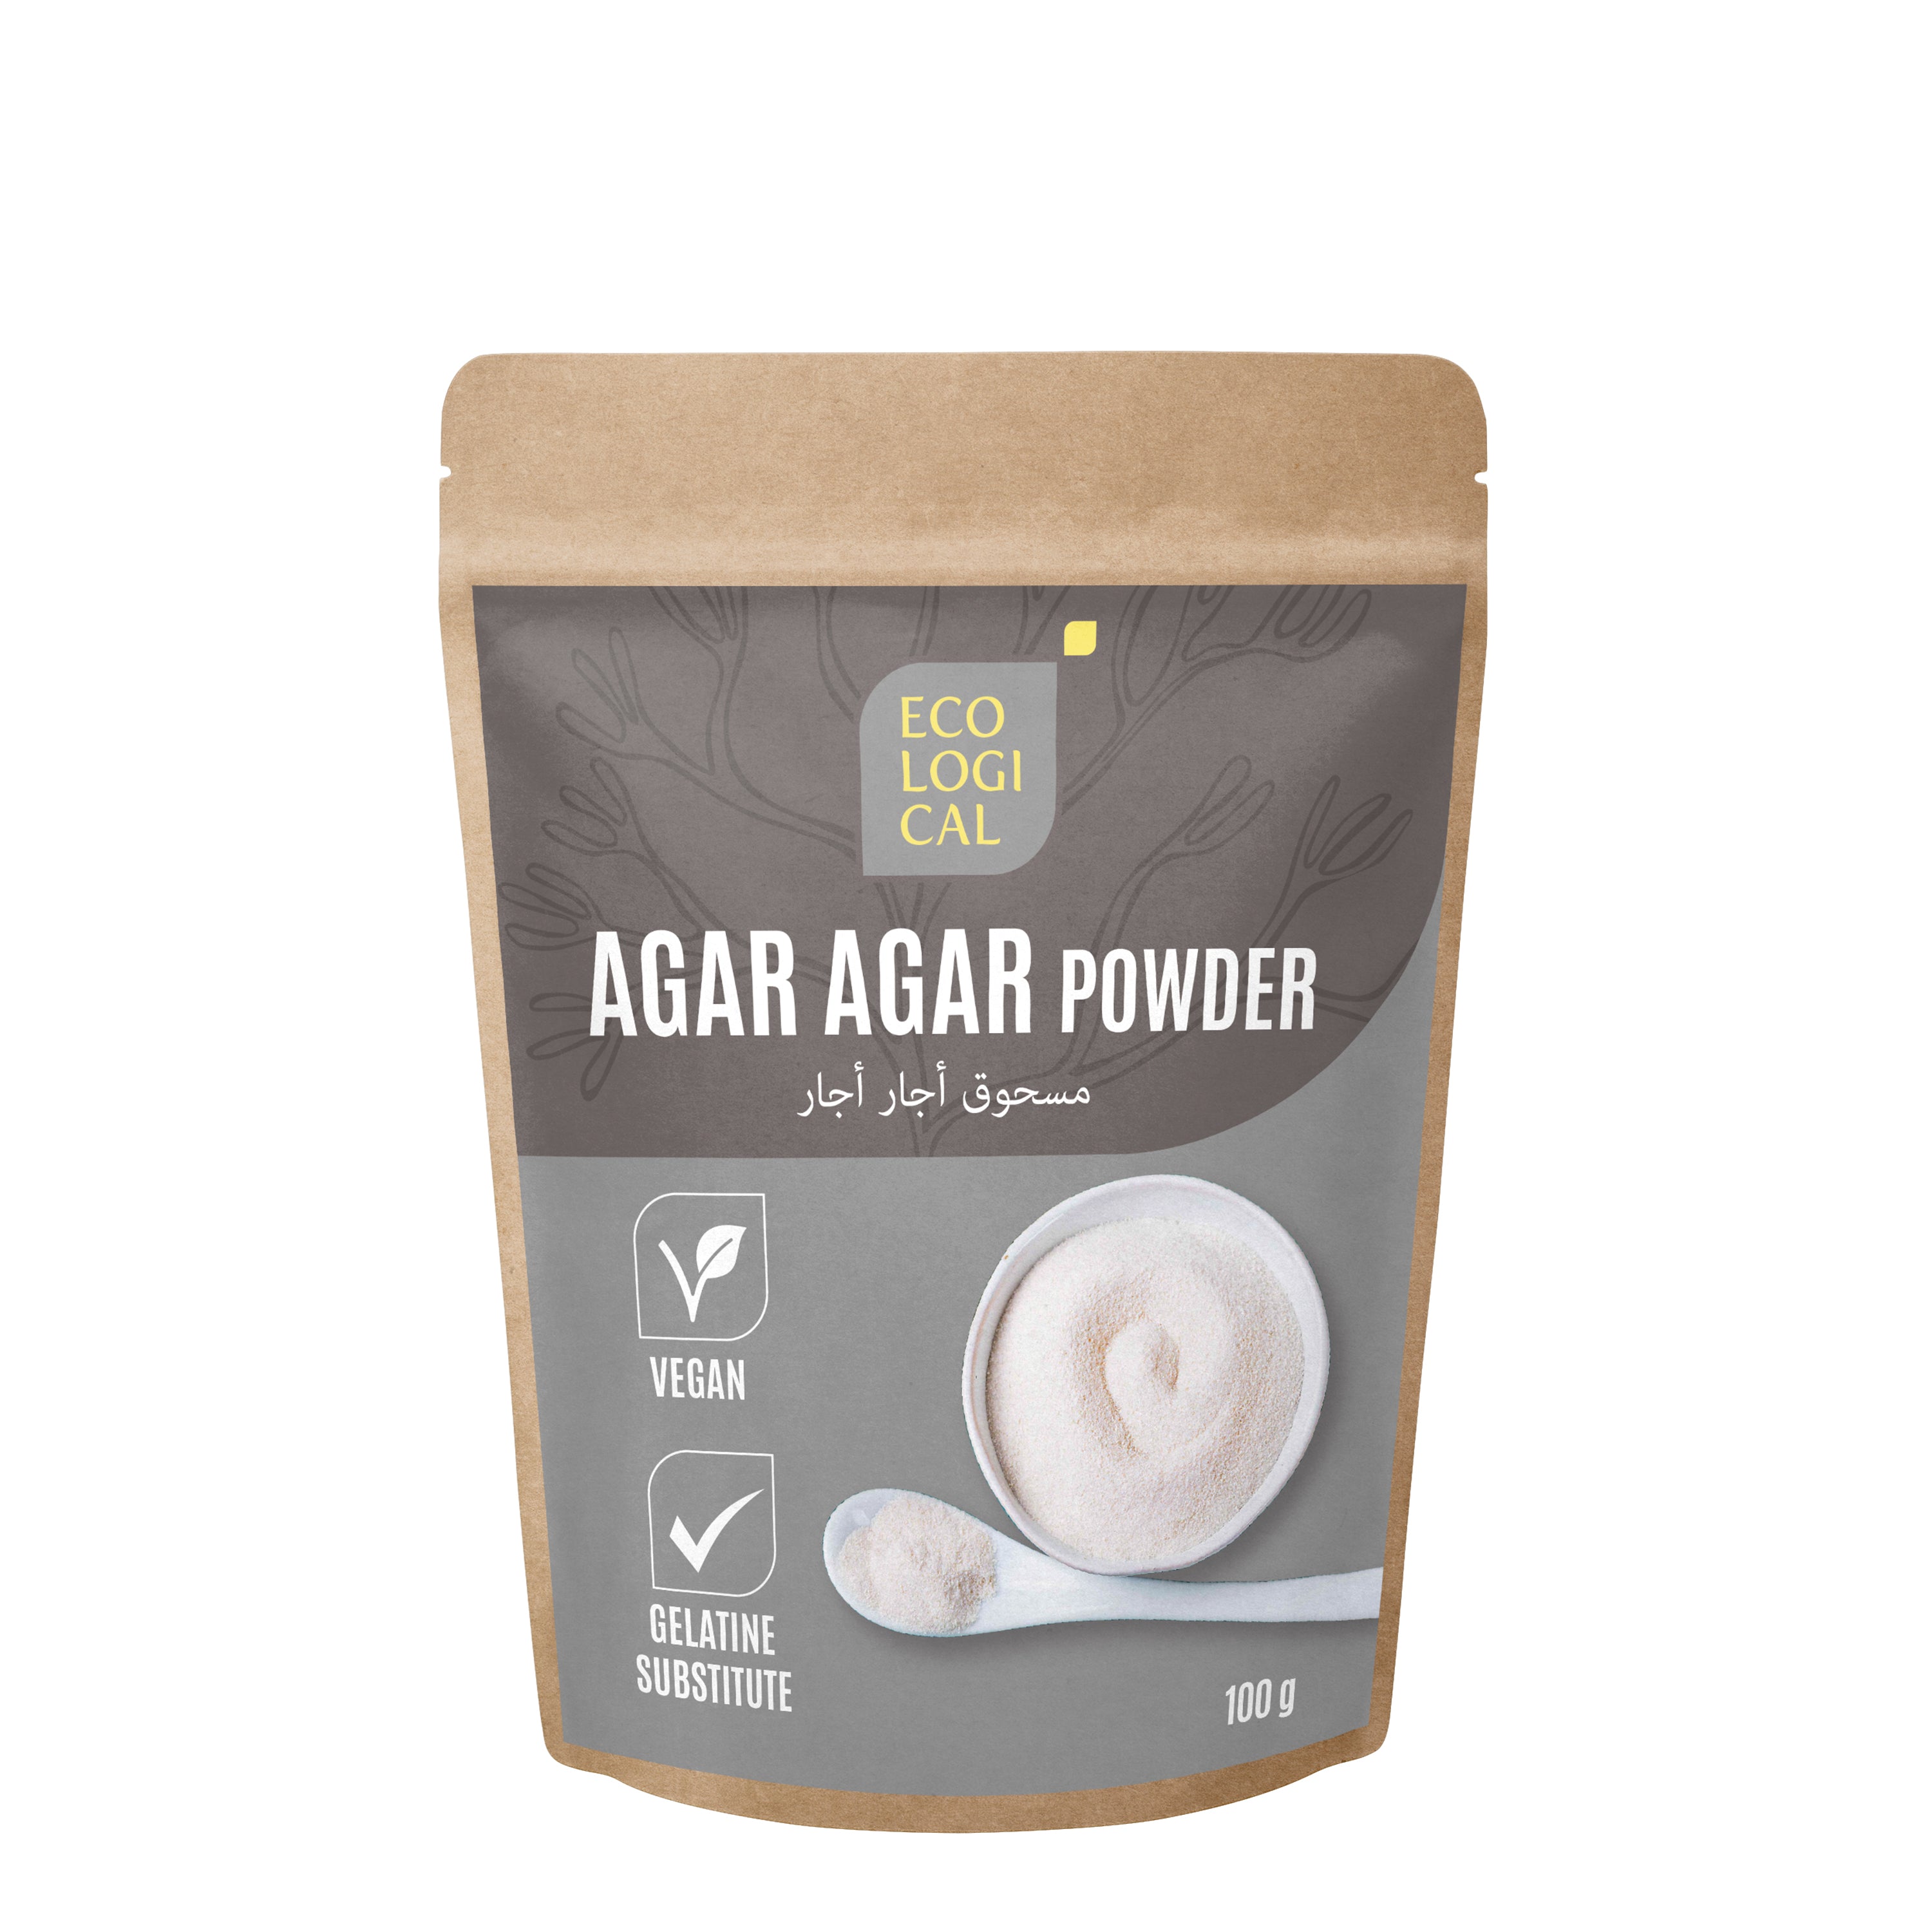 ECOLOGICAL Agar Agar Powder, 100g